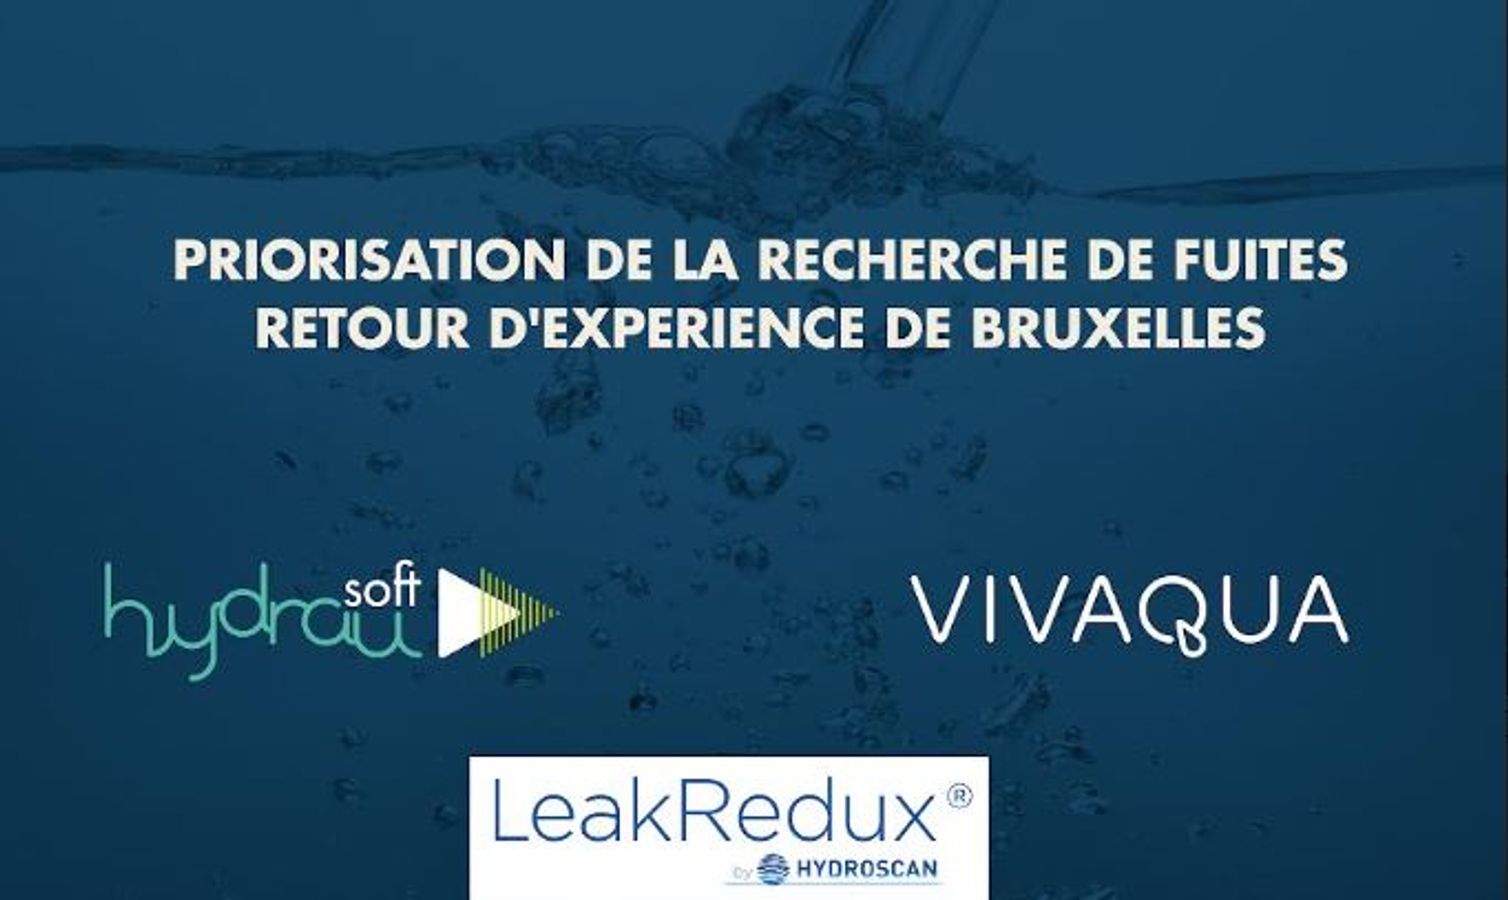 Amélioration du rendement des réseaux eau potable : comment prioriser la recherche de fuites en optimisant les dépenses ? Retour d’expérience de Bruxelles - F24 - #CGLE 2022